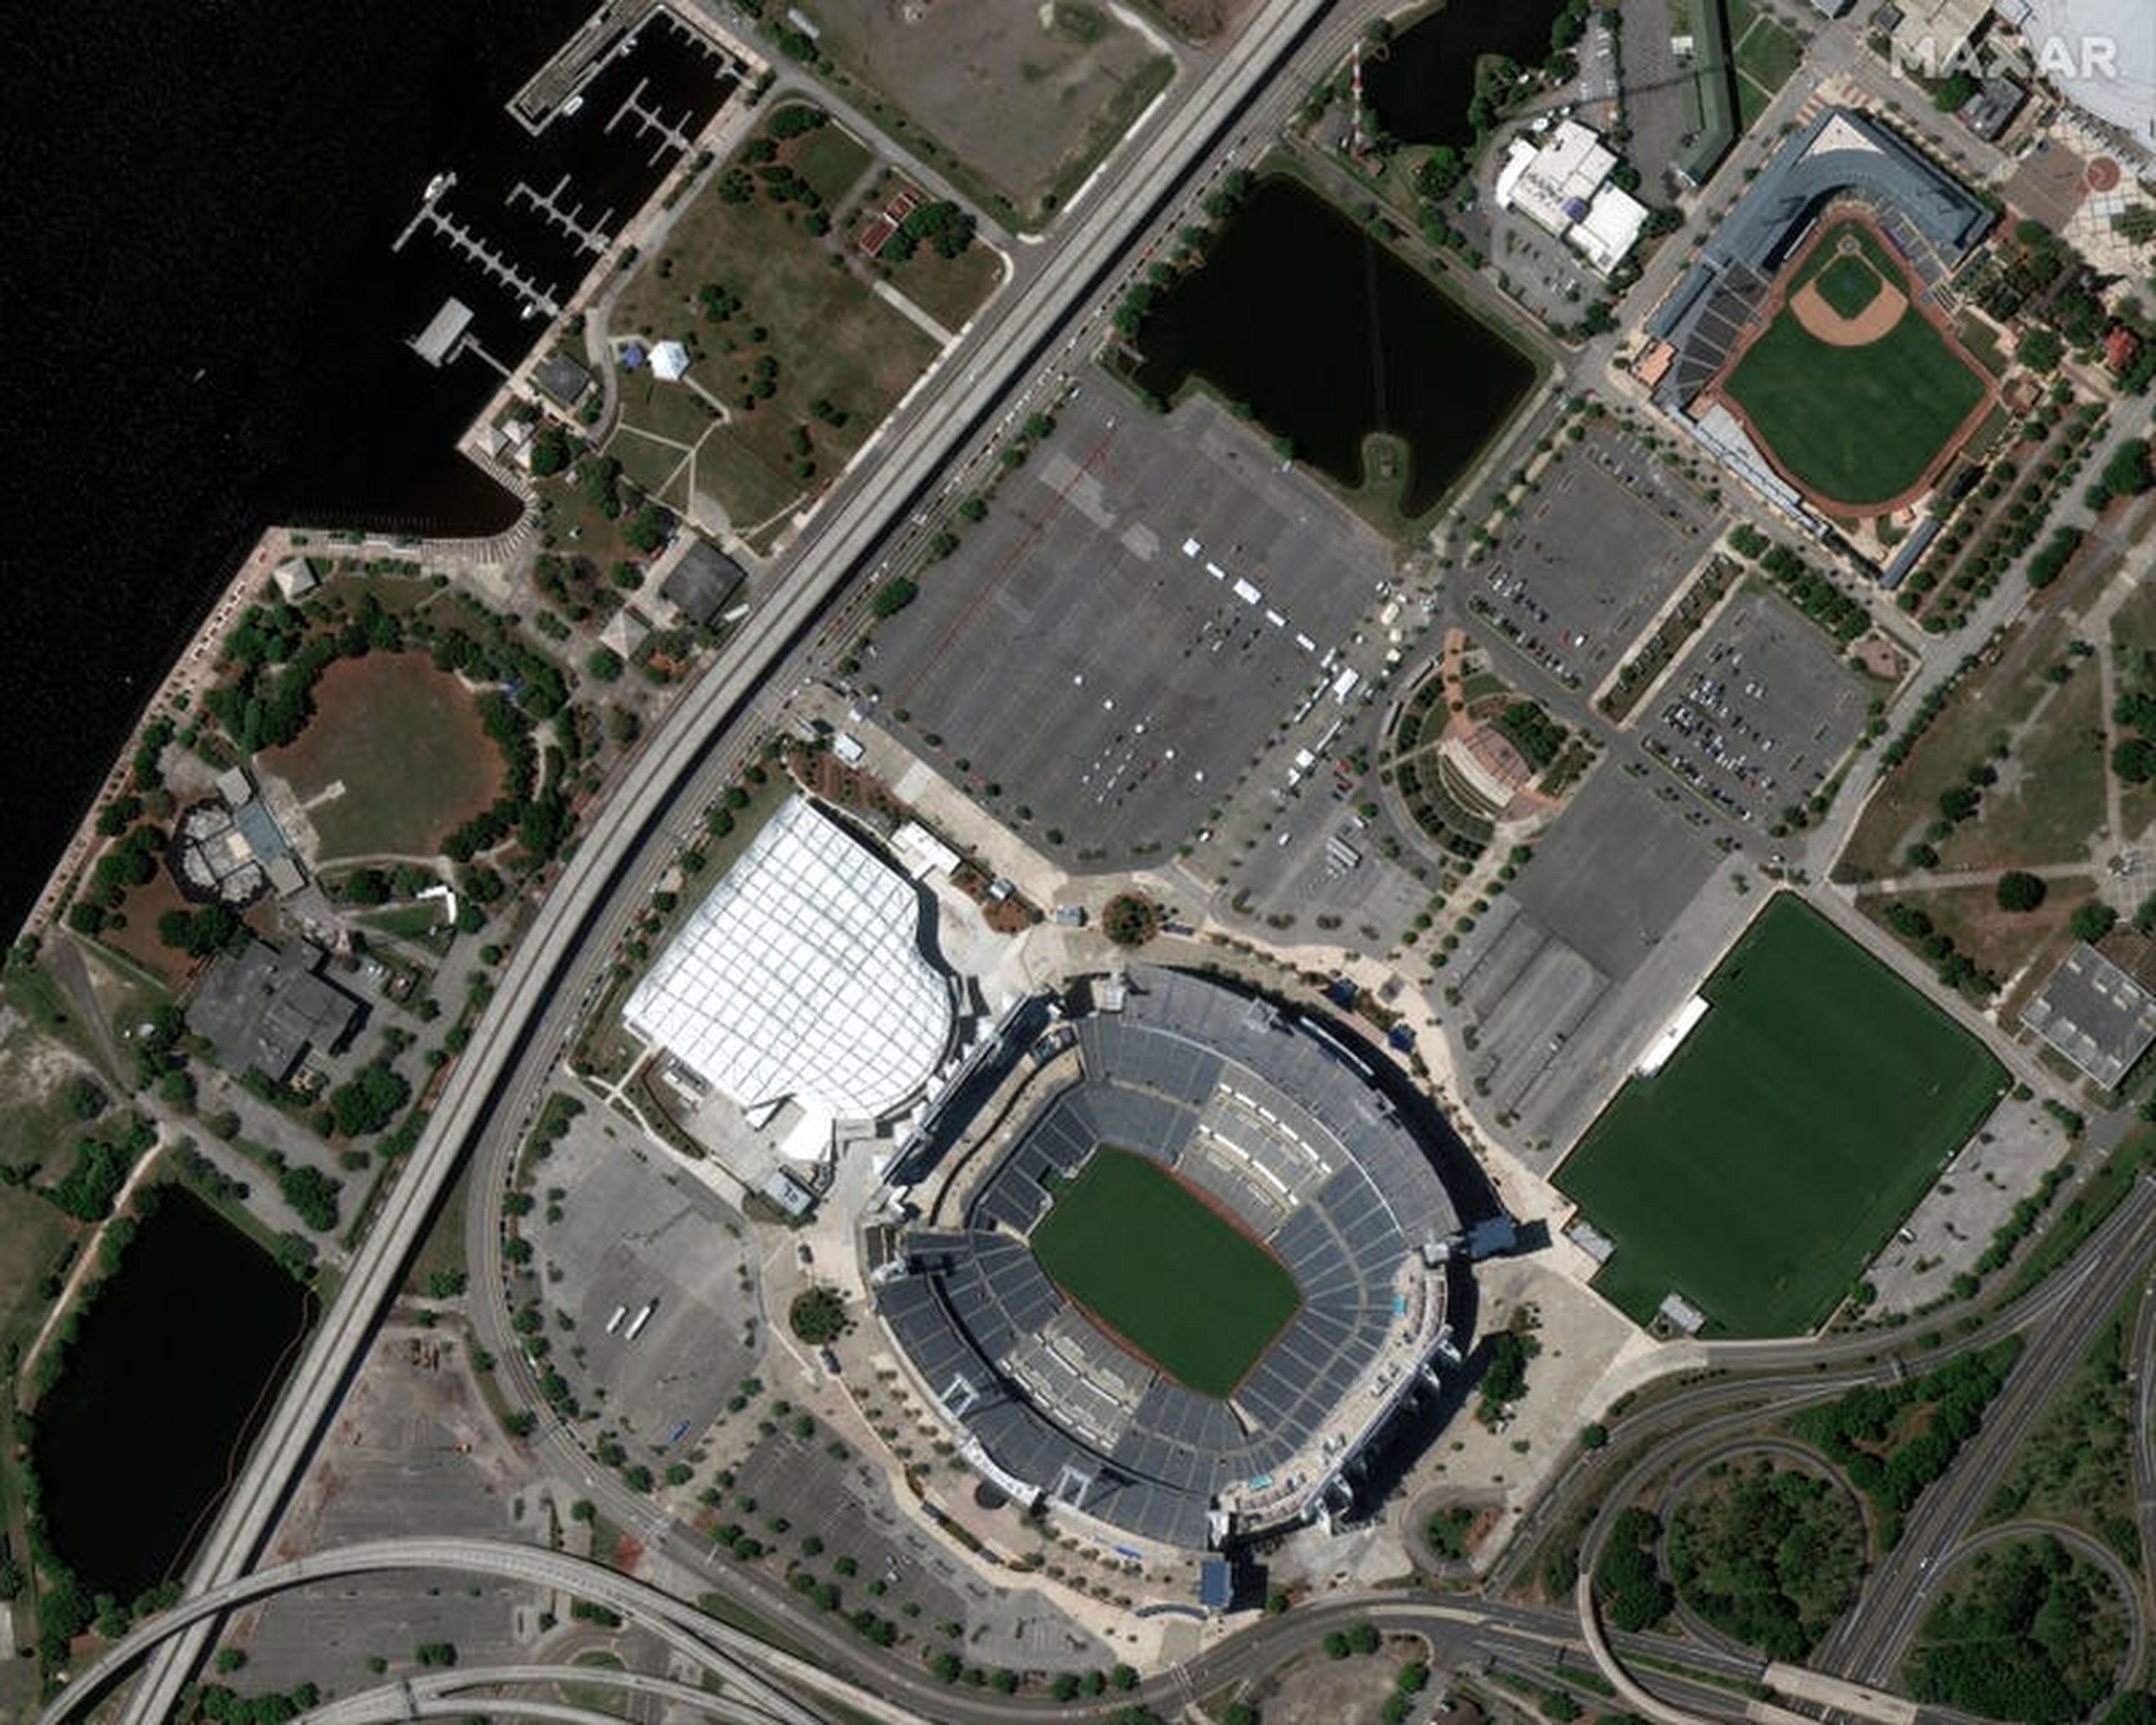 La zona para aparcar del Tiaa Bank Field en Jacksonville, Florida, el estadio donde se encuentran los Jaguars, también se ha reconvertido